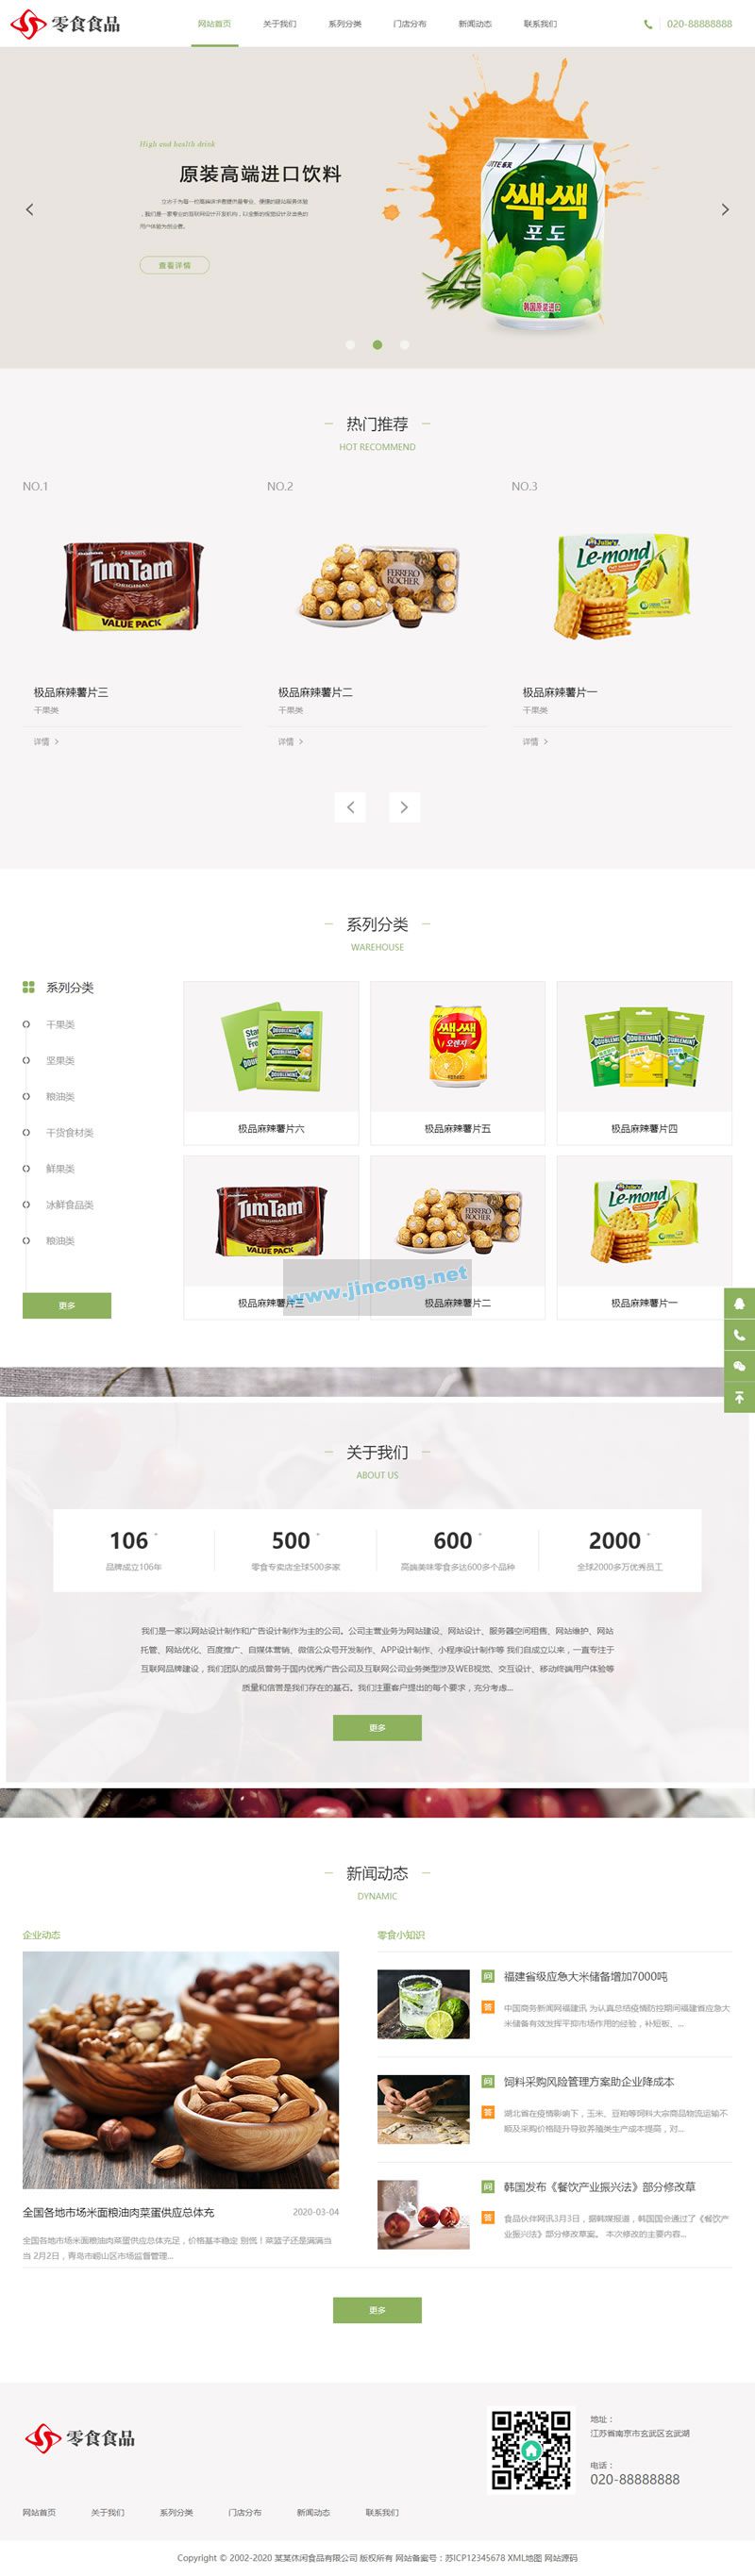 响应式日化食品零食类网站源码 HTML5零食连锁加盟店网站织梦模板